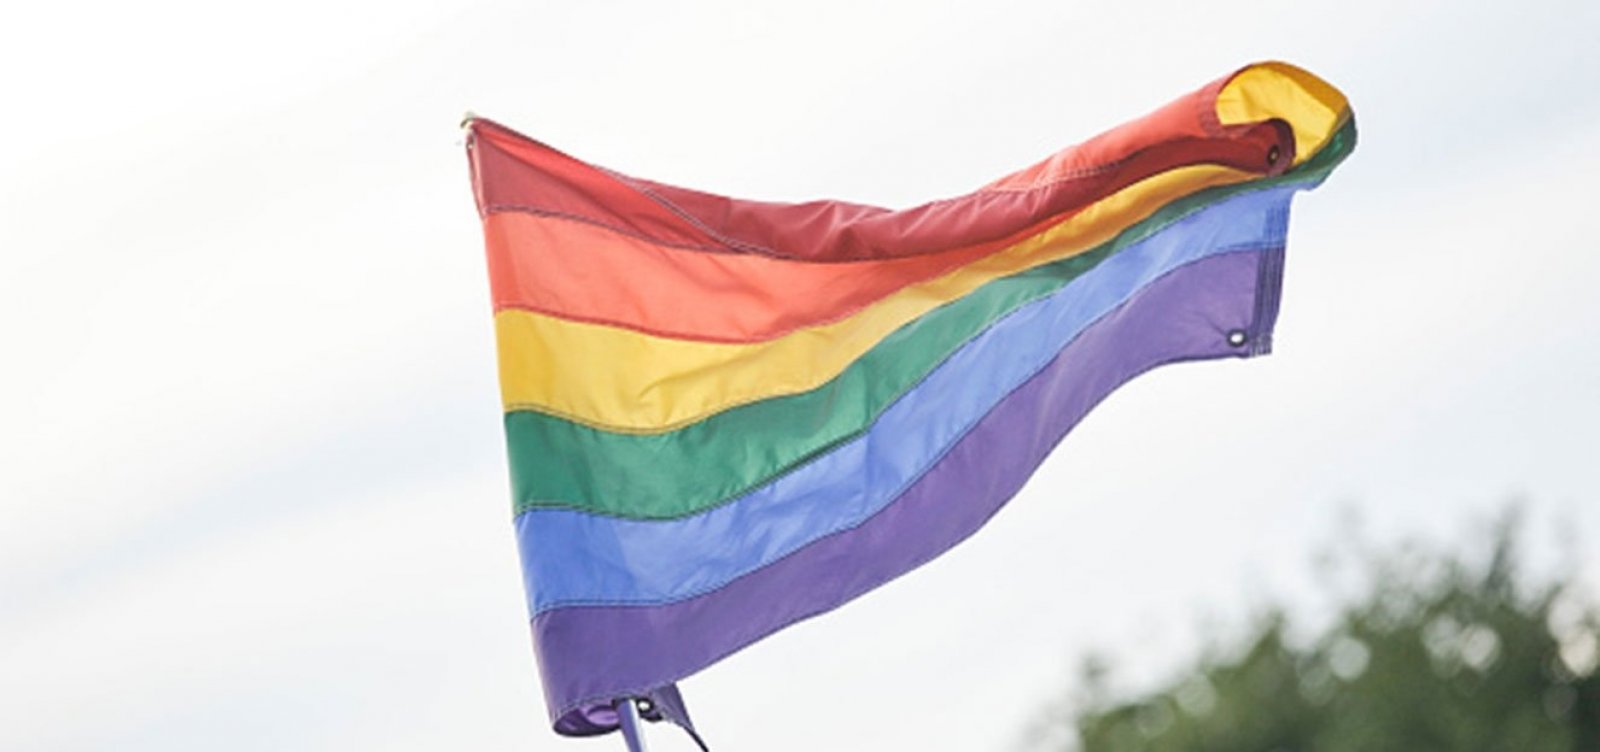 Escócia torna obrigatório ensino sobre pessoas LGBT+ nas escolas públicas